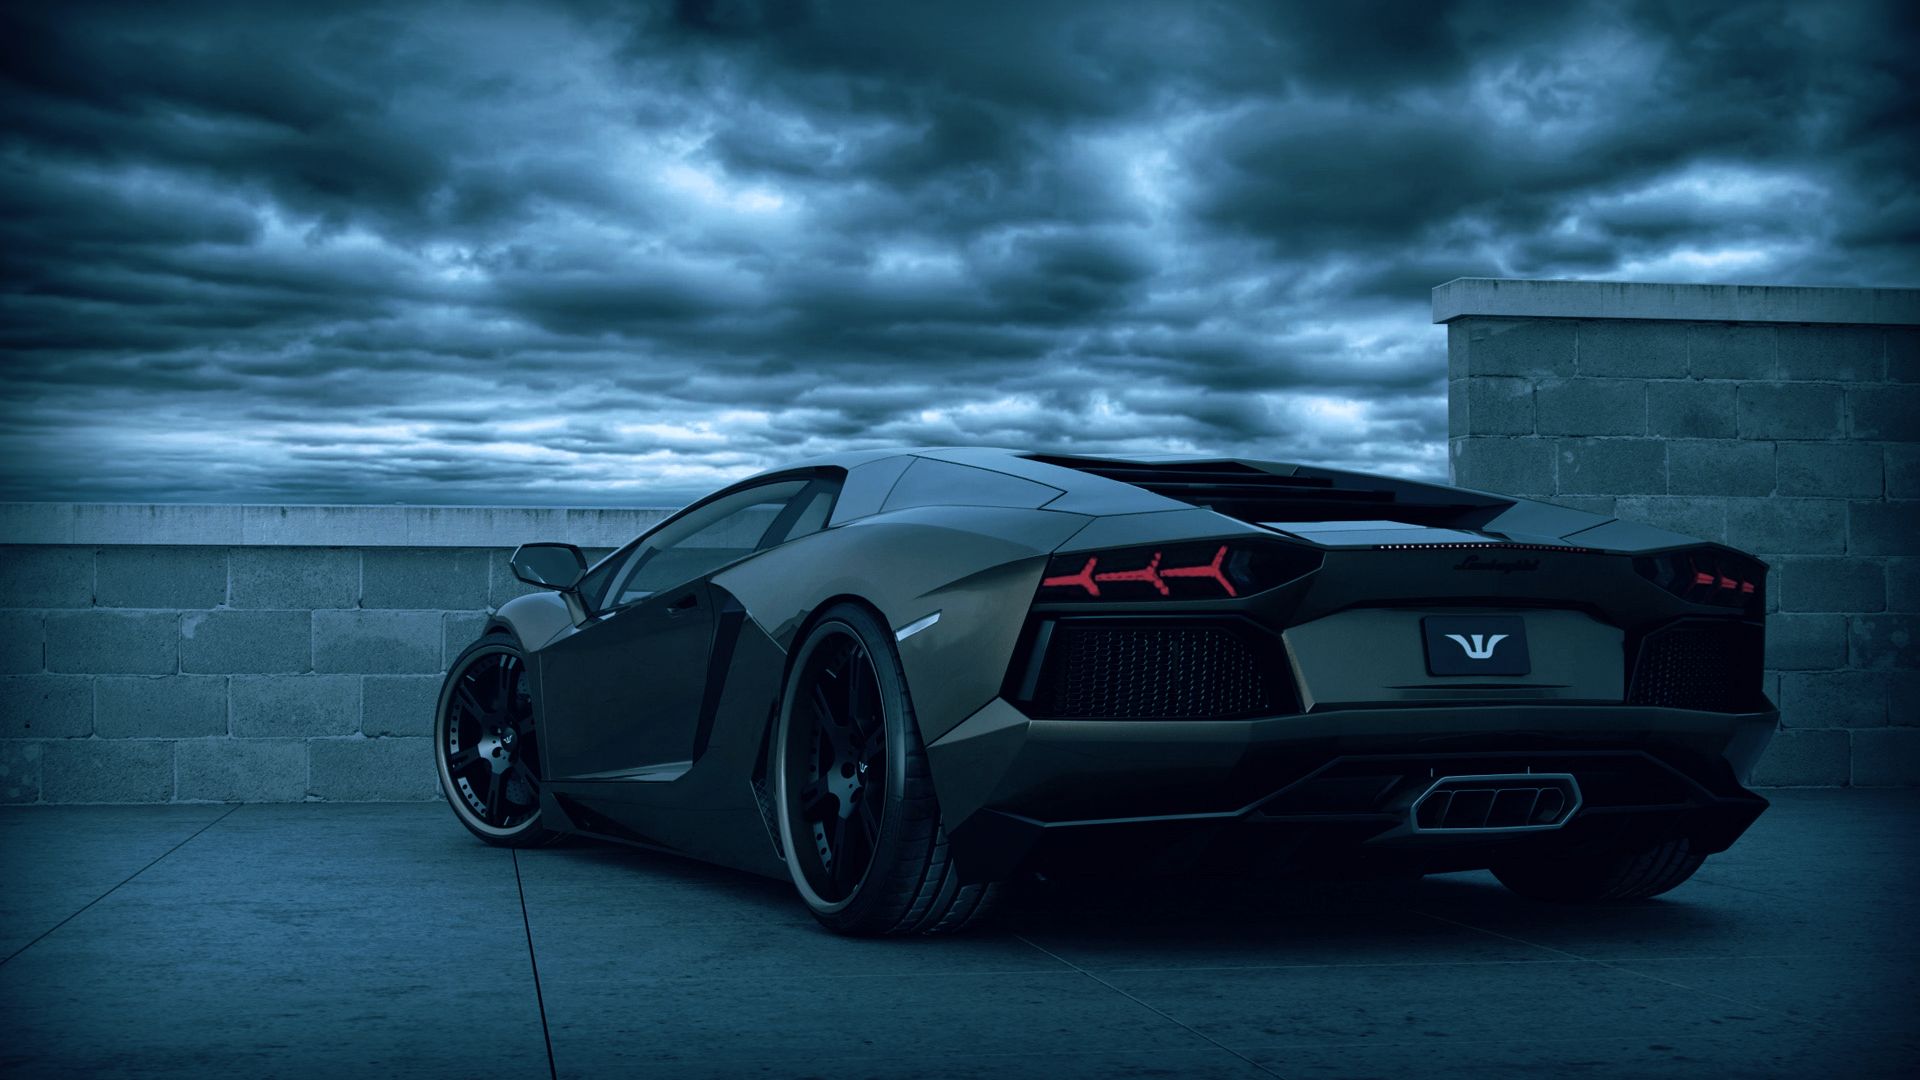 Lamborghini Dark wallpapers HD Wallpapers, Backgrounds, Images